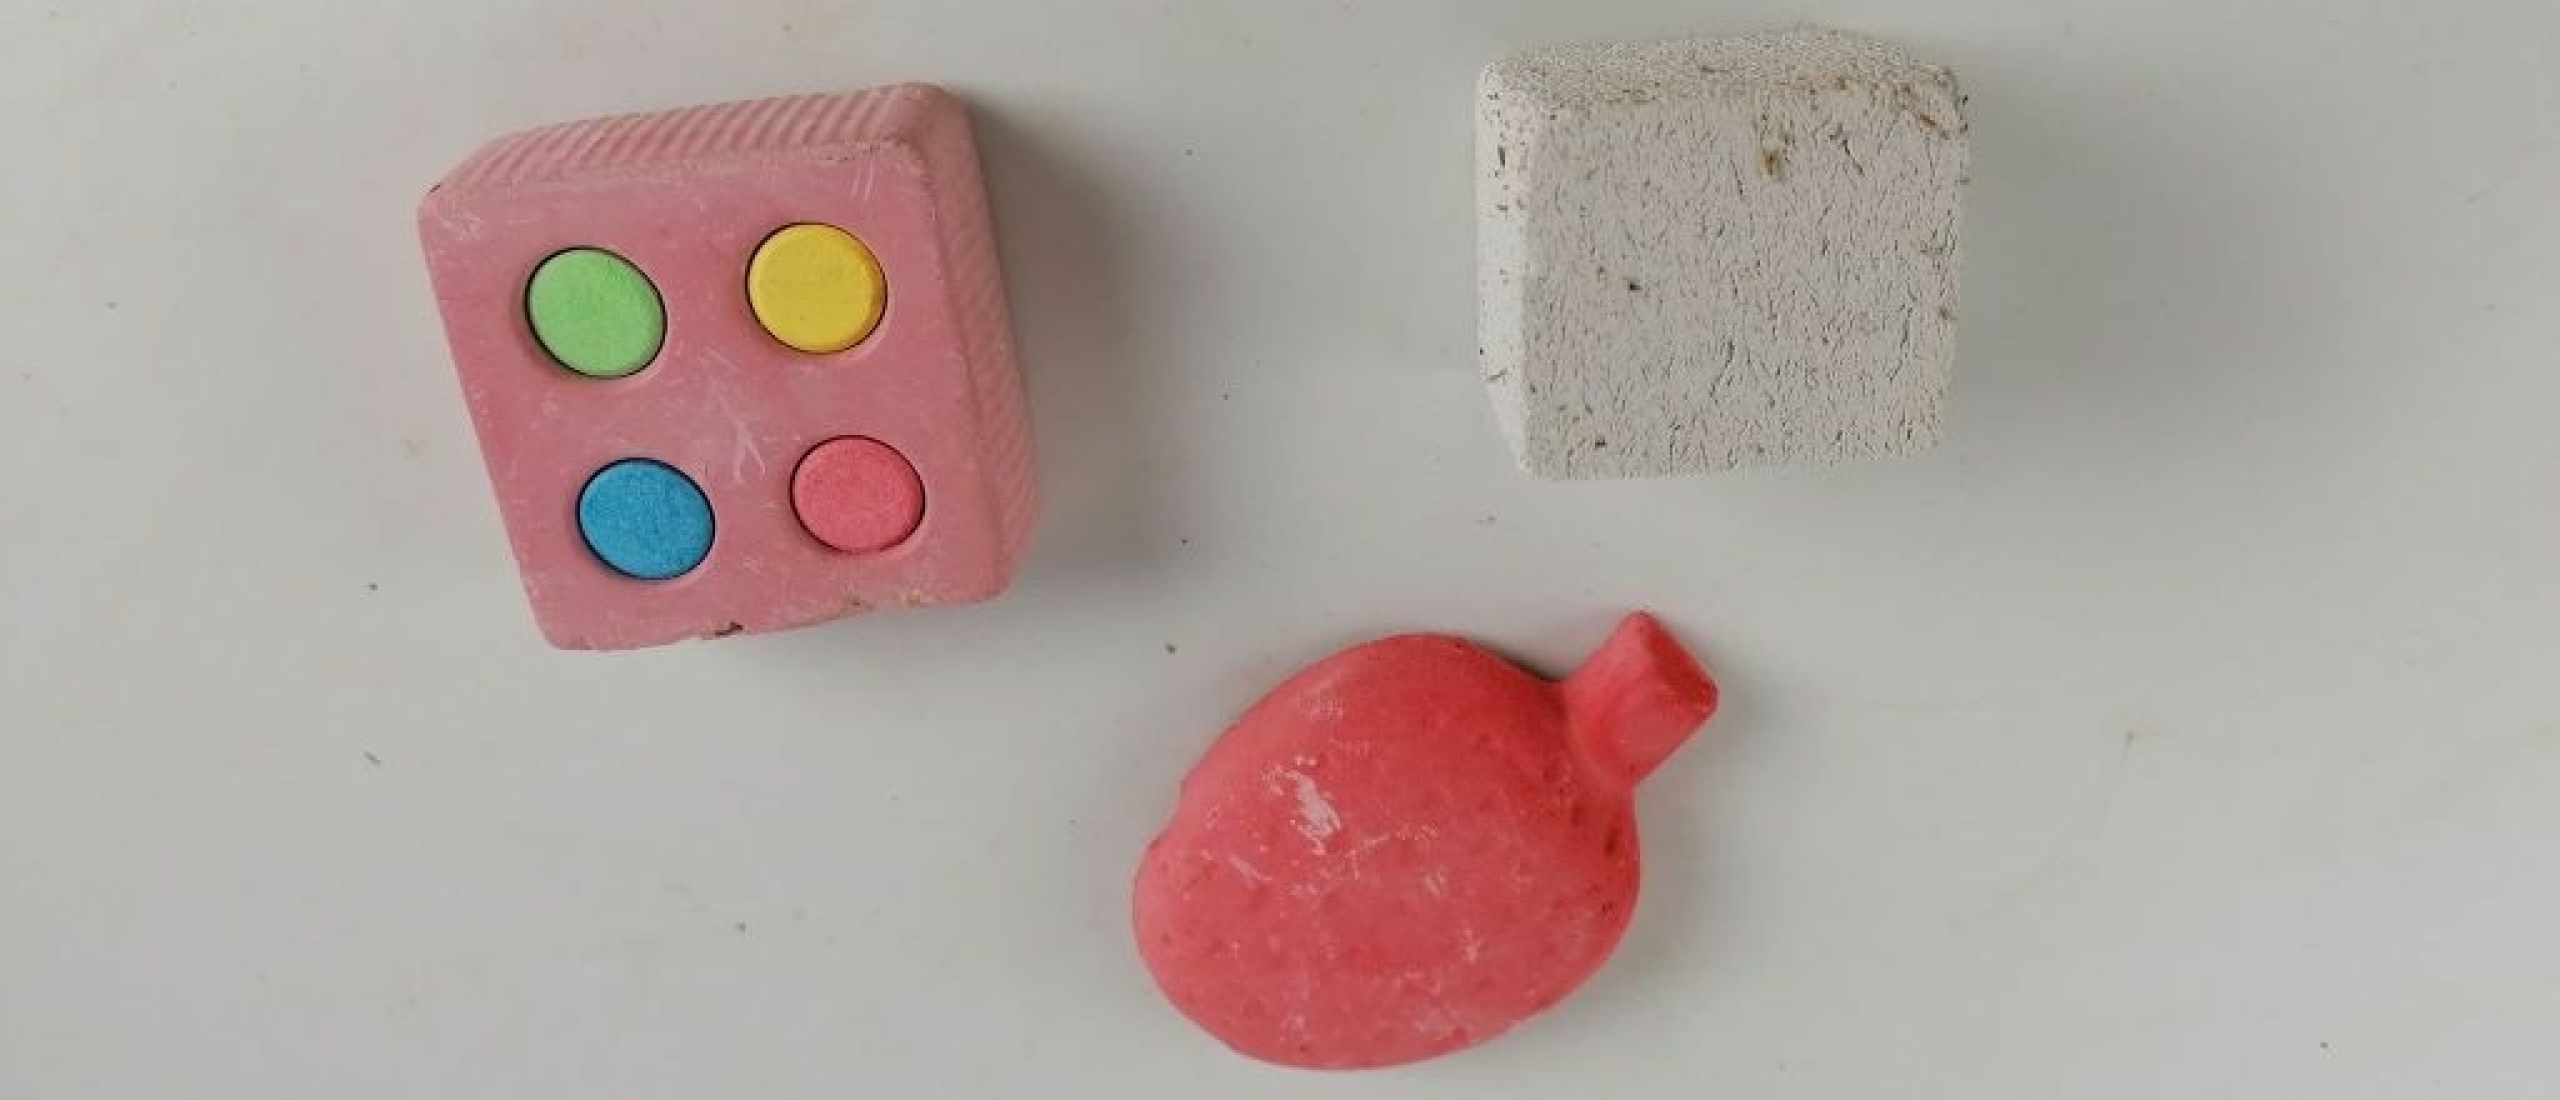 Speelgoed en snackjes die gevaarlijk zijn voor cavia’s